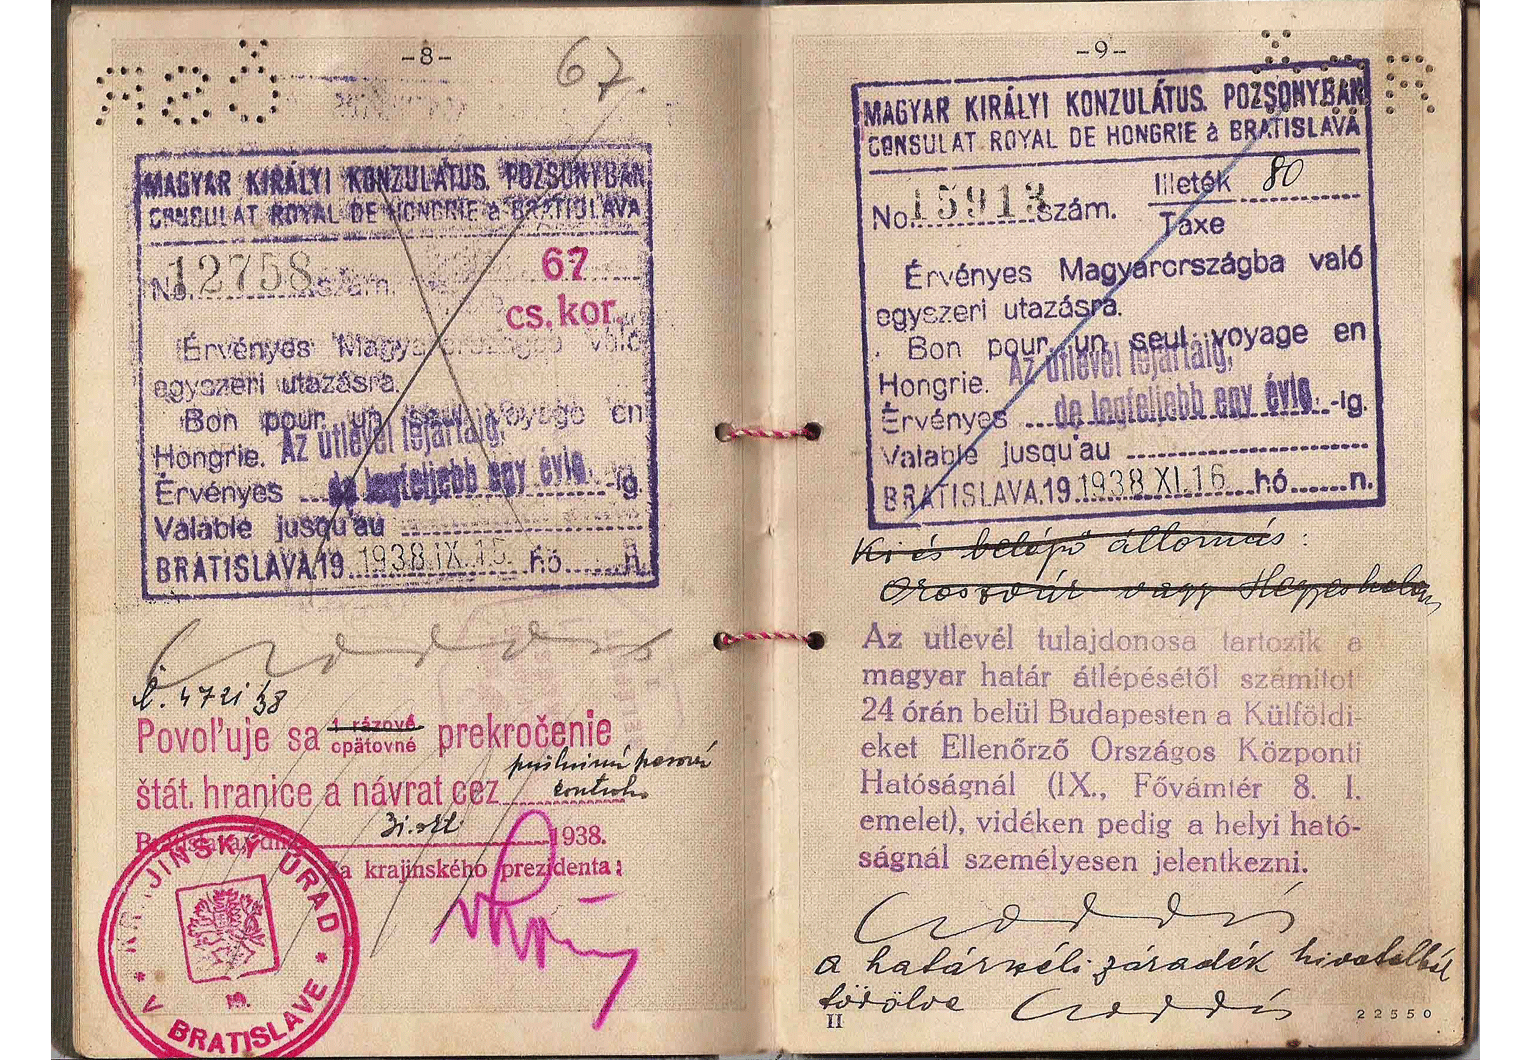 WW2 Czechoslovakia passport